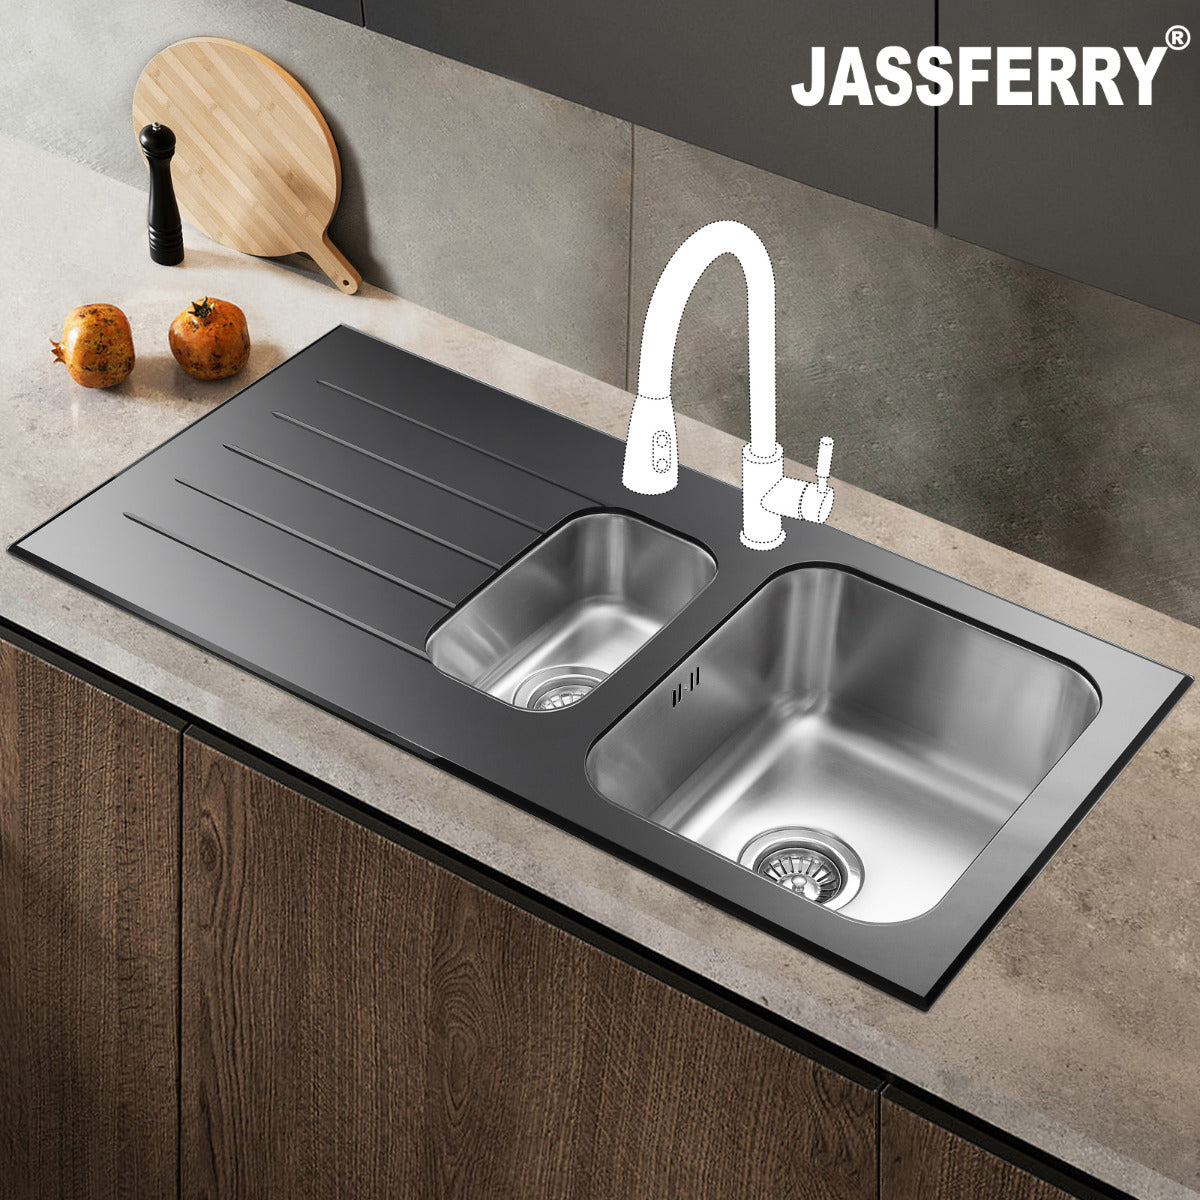 JassferryJASSFERRY Black Glass Top Kitchen Sink Stainless Steel 1.5 Bowl Lefthand DrainerKitchen Sink